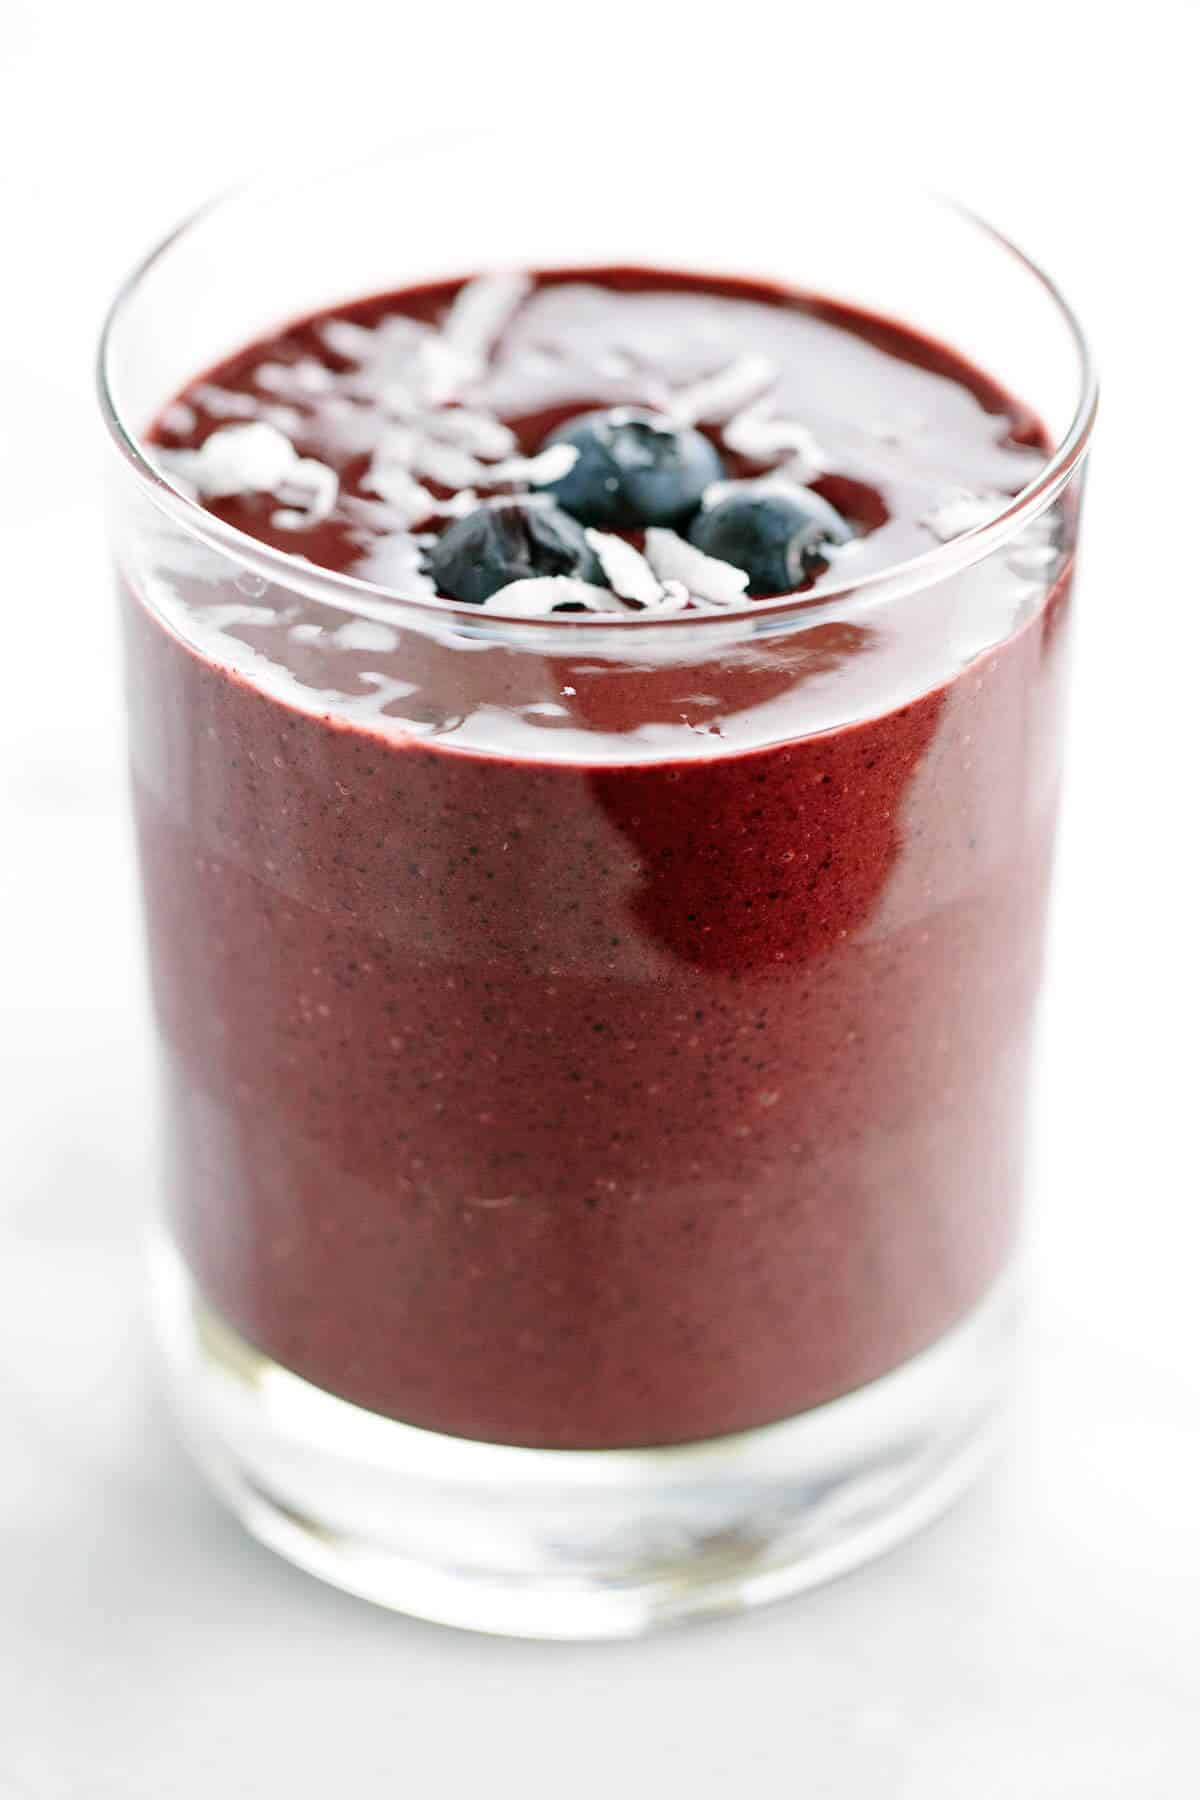 Fruit Smoothie Recipes With Yogurt
 Blueberry Yogurt Smoothie Recipe